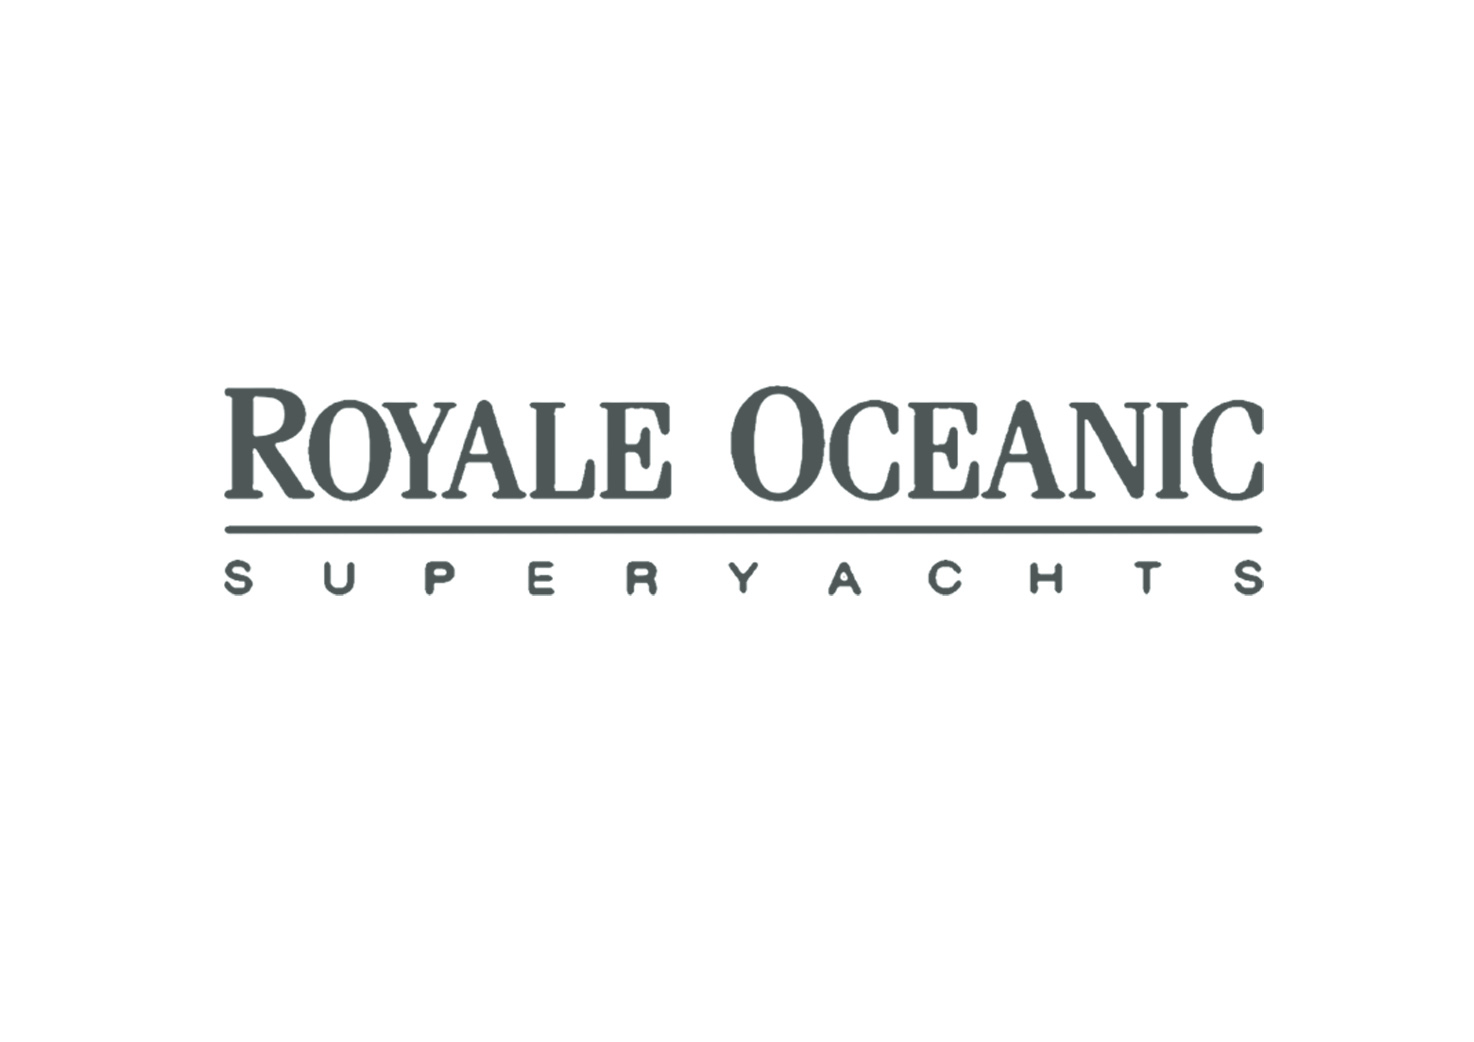 Royale Oceanic.jpg